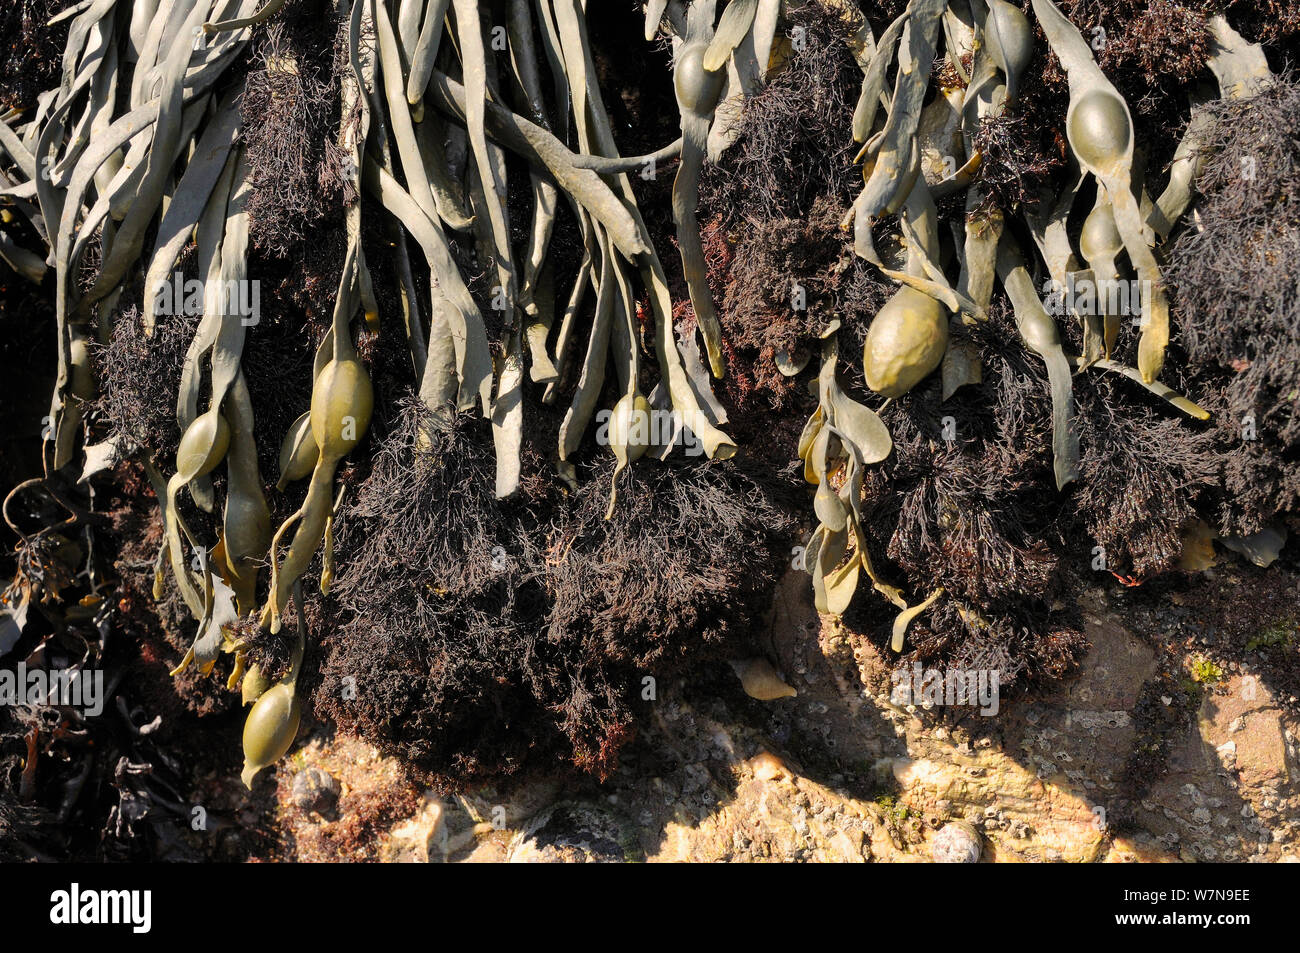 Epífita (alga roja Polysiphonia lanosa) creciendo en tufts en anudado asolando (Ascophyllum nudoso) en una orilla rocosa, Wembury, Devon, Reino Unido, Agosto. Foto de stock